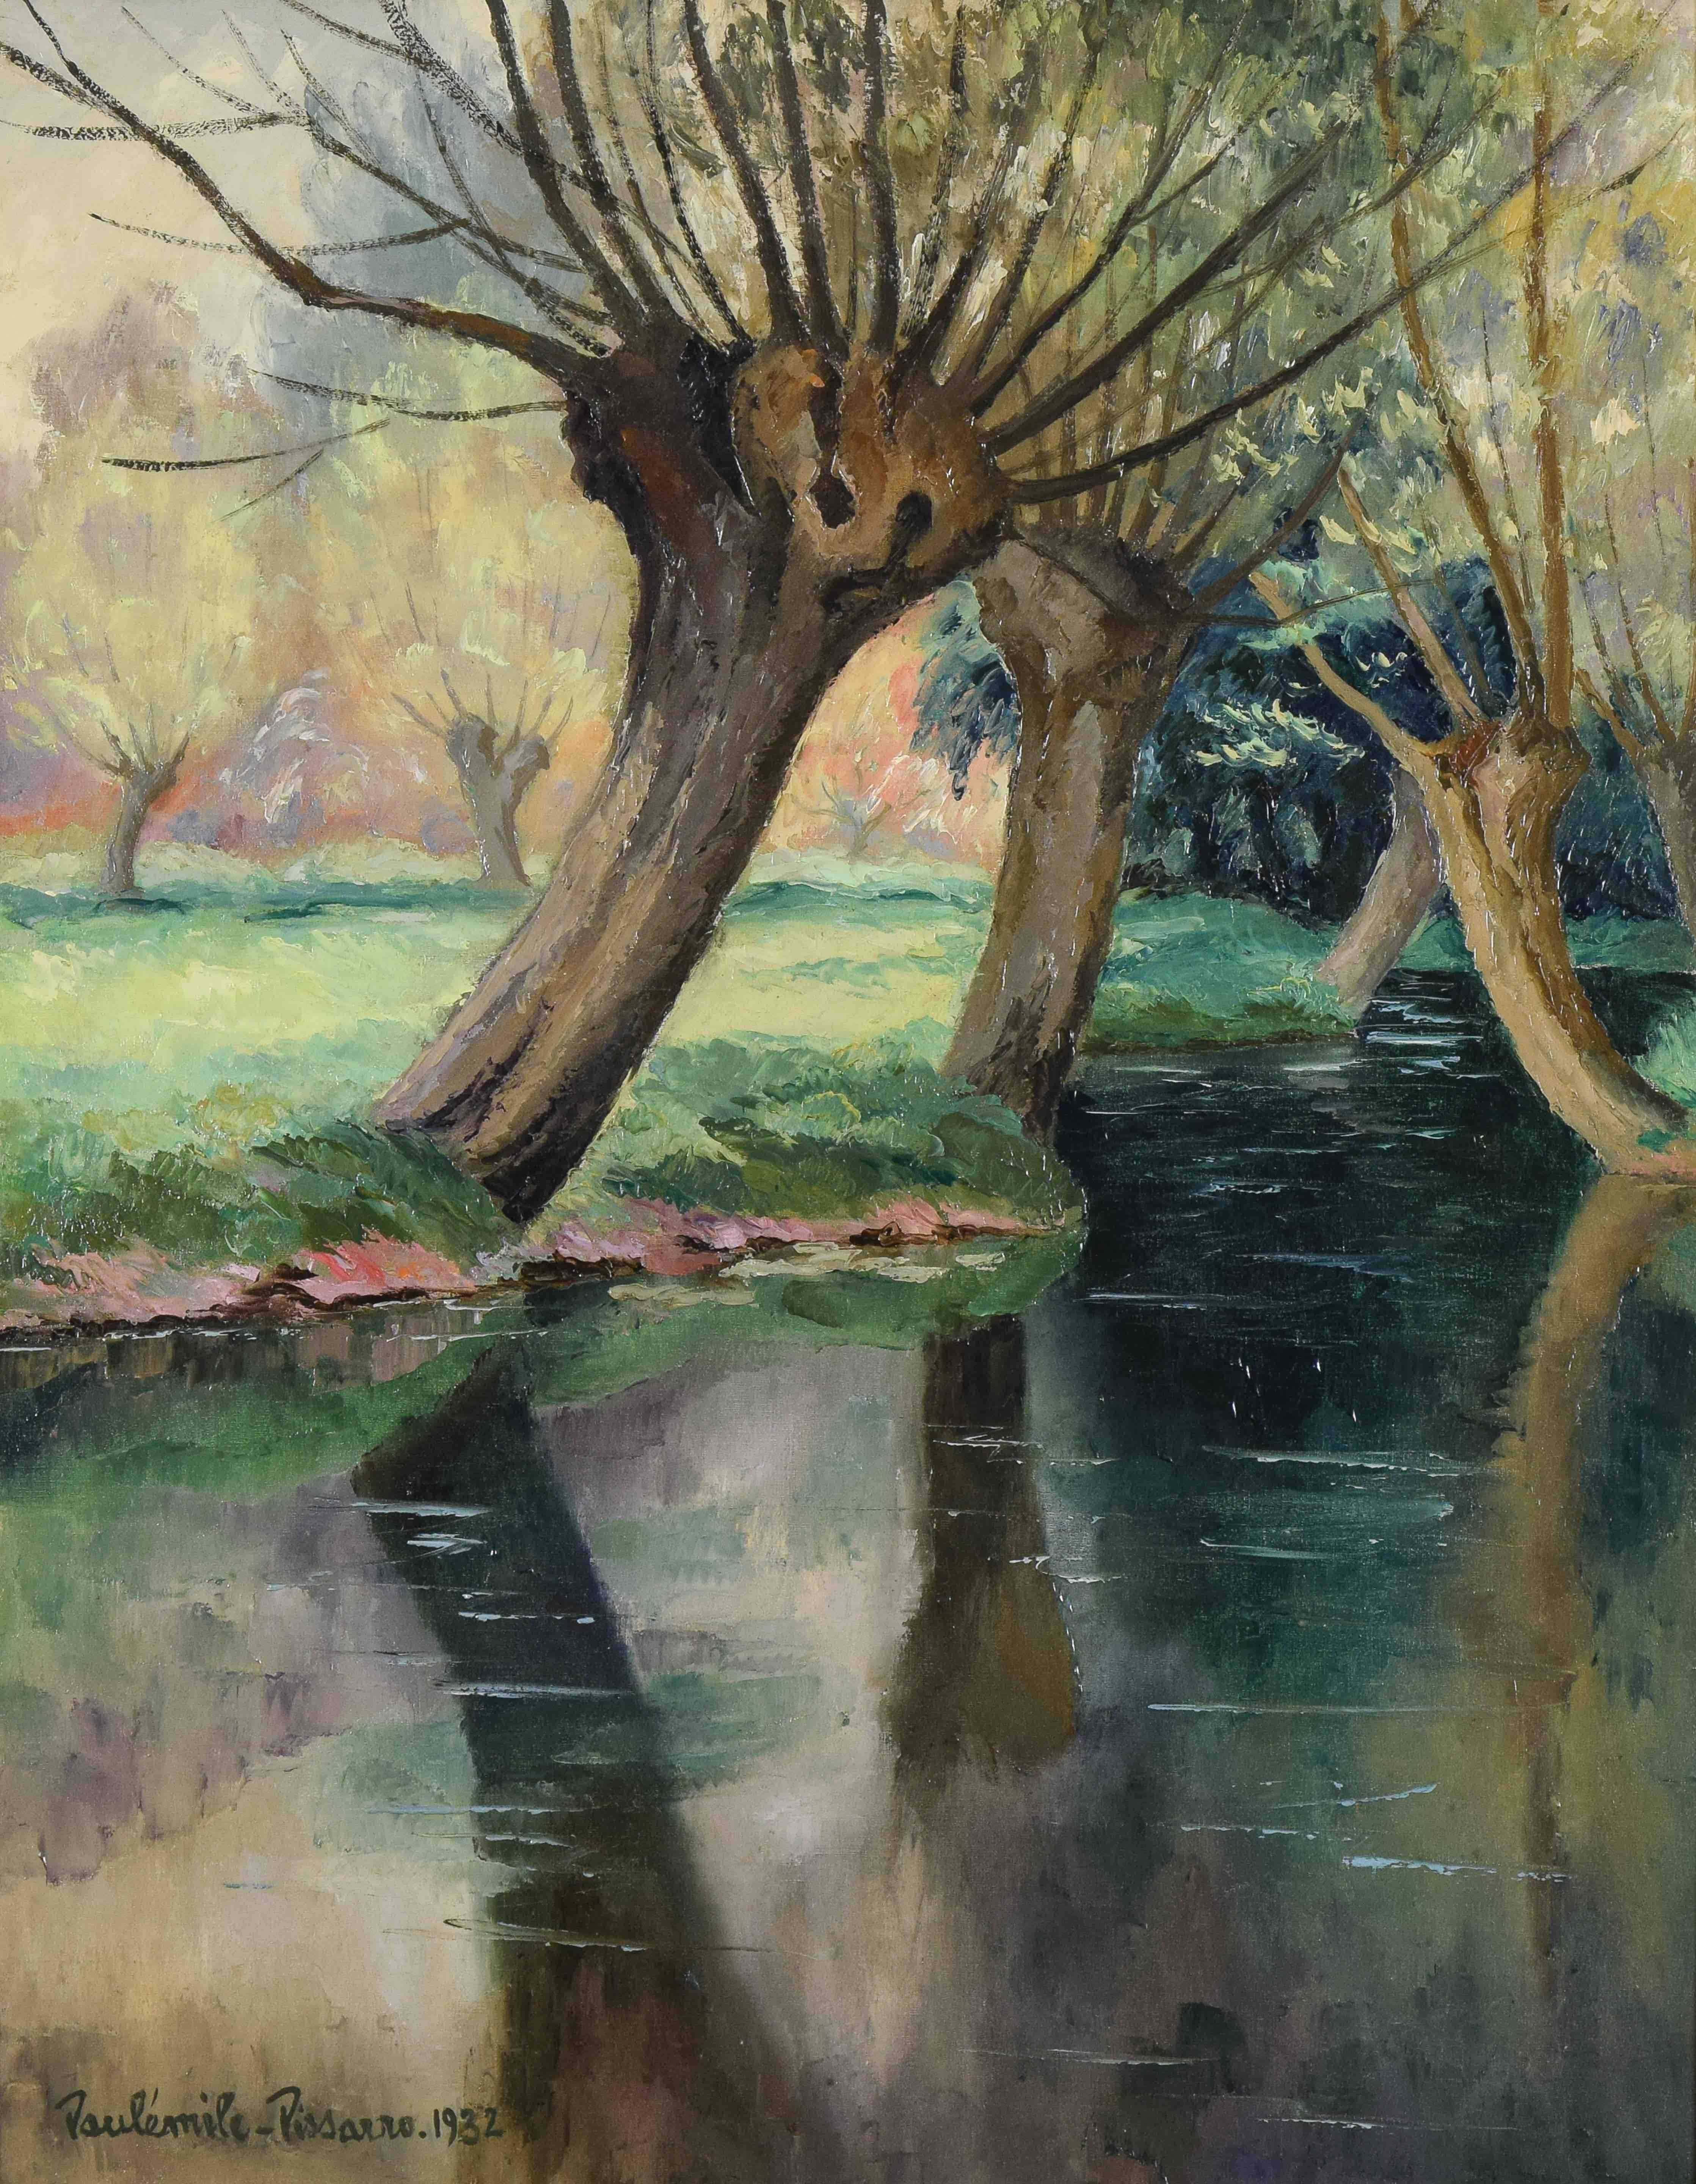 La Rivière by PAULÉMILE PISSARRO - Post Impressionist Landscape Painting, River